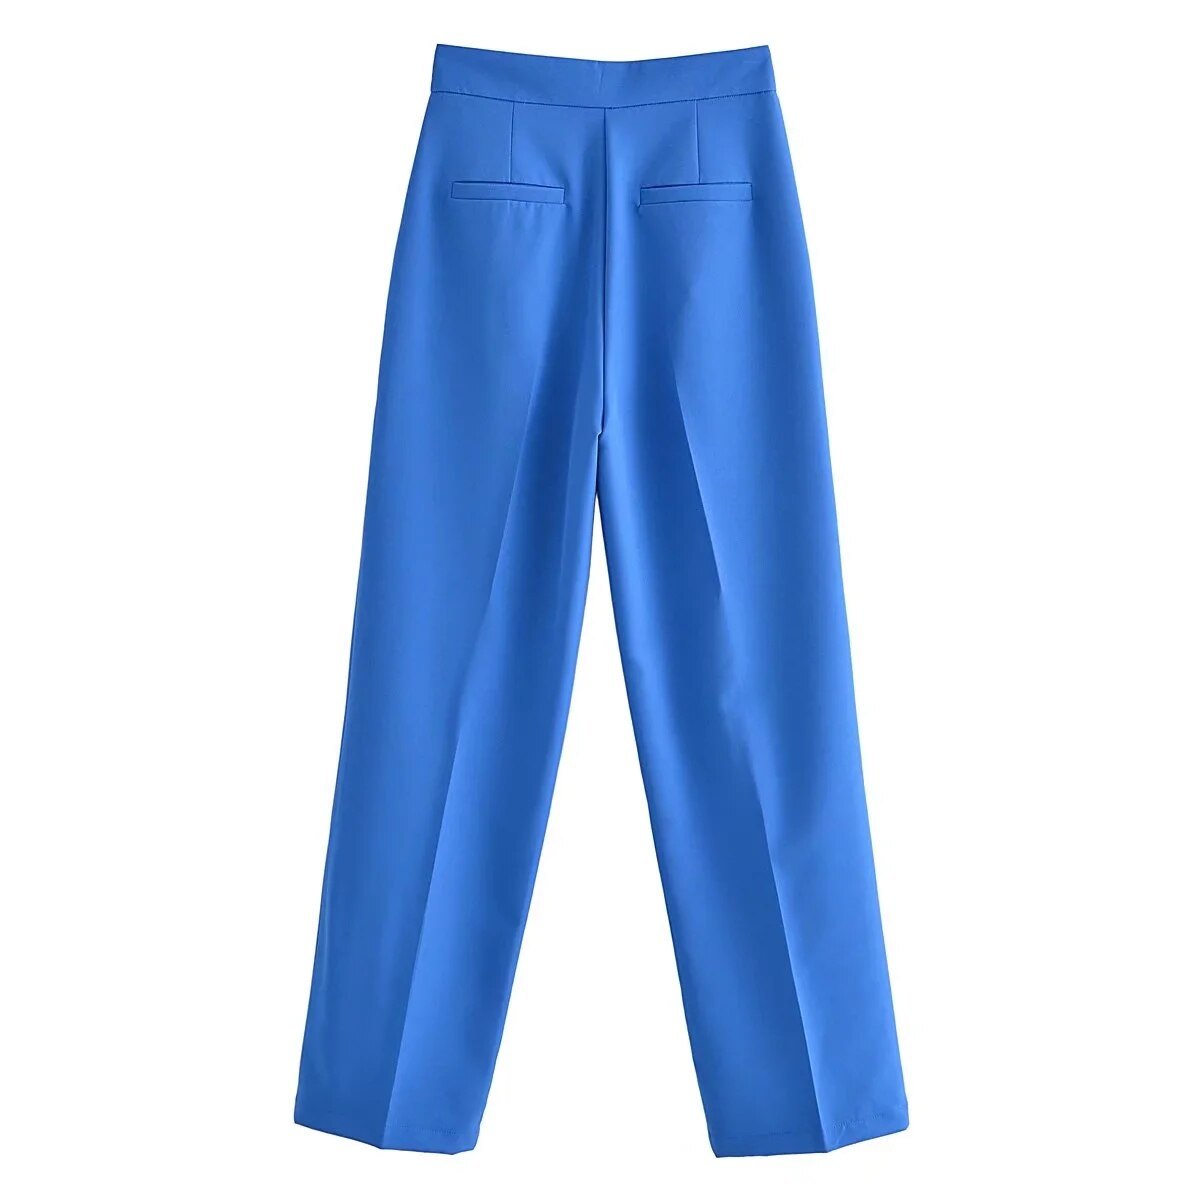 Pantalon stylé à pinces, coupe droite, différentes couleurs-rose-bleu-vert-jaune-orange